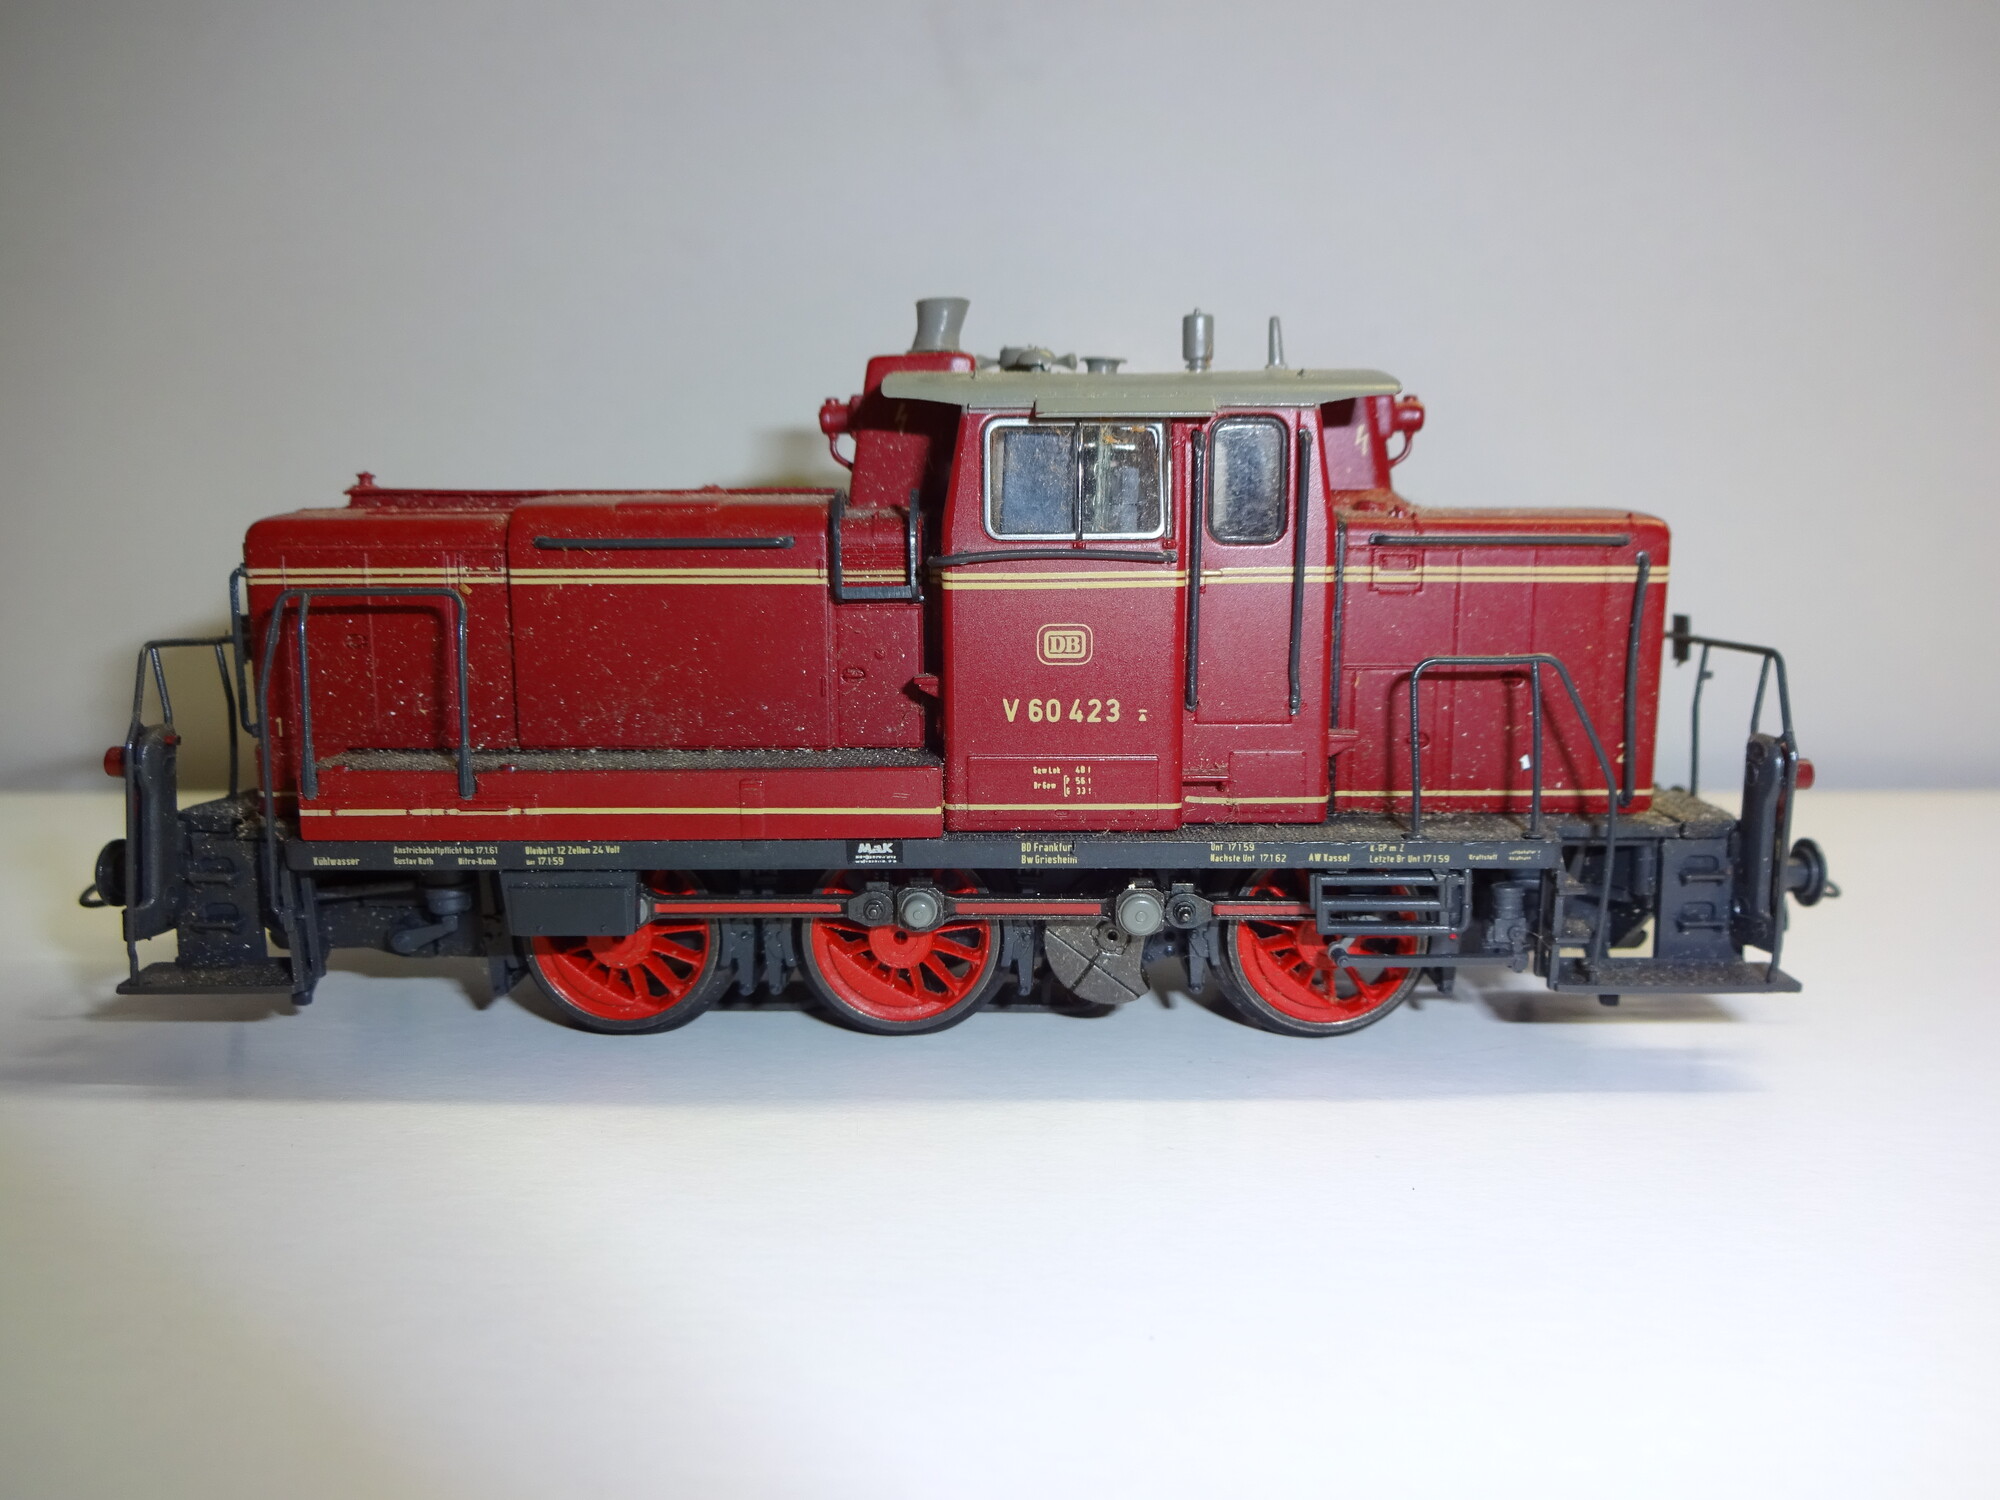 Roco H0 DB Diesellokomotive V 60 423 in AC, ohne Originalverpackung. Die Lok ist in einem gebrauchten Zustand. Es handelt sich hierbei um ein Wechselstrom Modell.